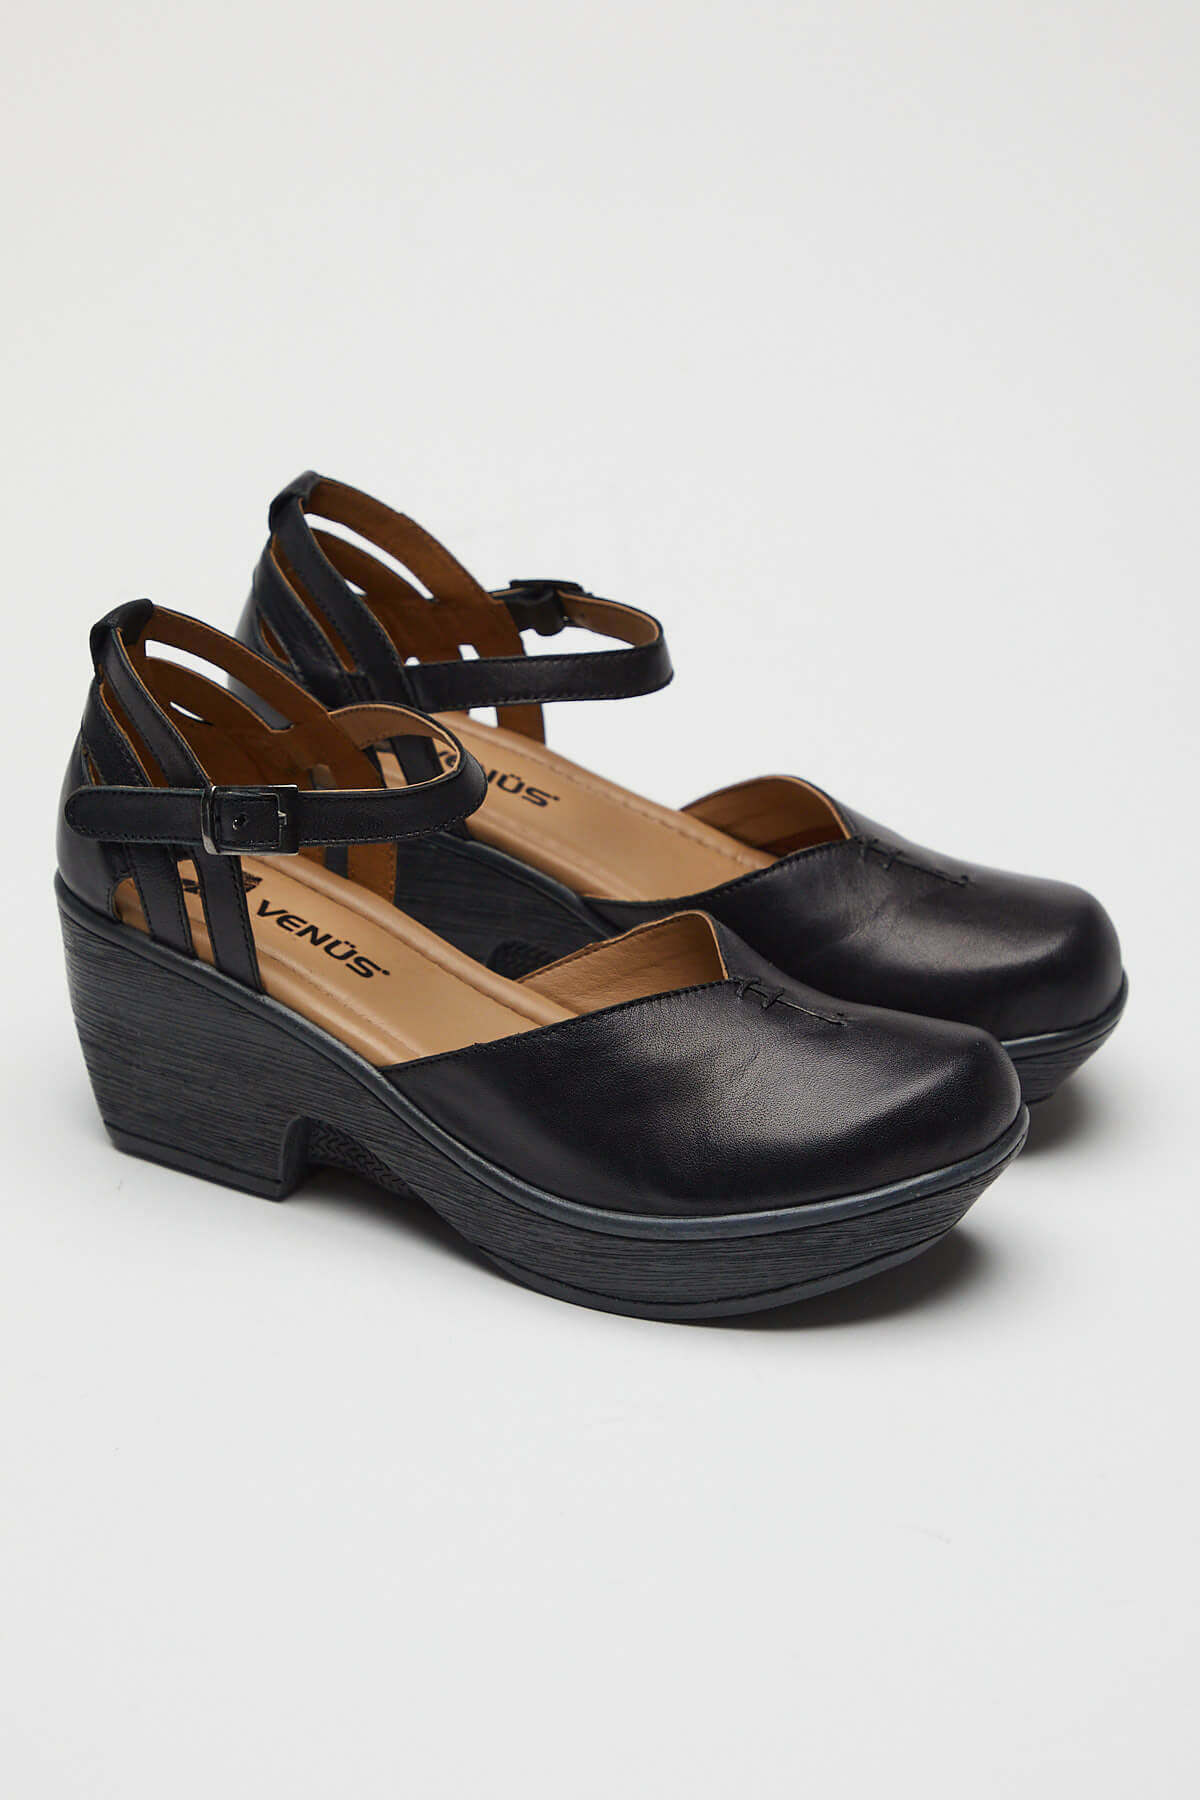 Kadın Apartman Topuk Deri Ayakkabı Siyah 1912502 - Thumbnail